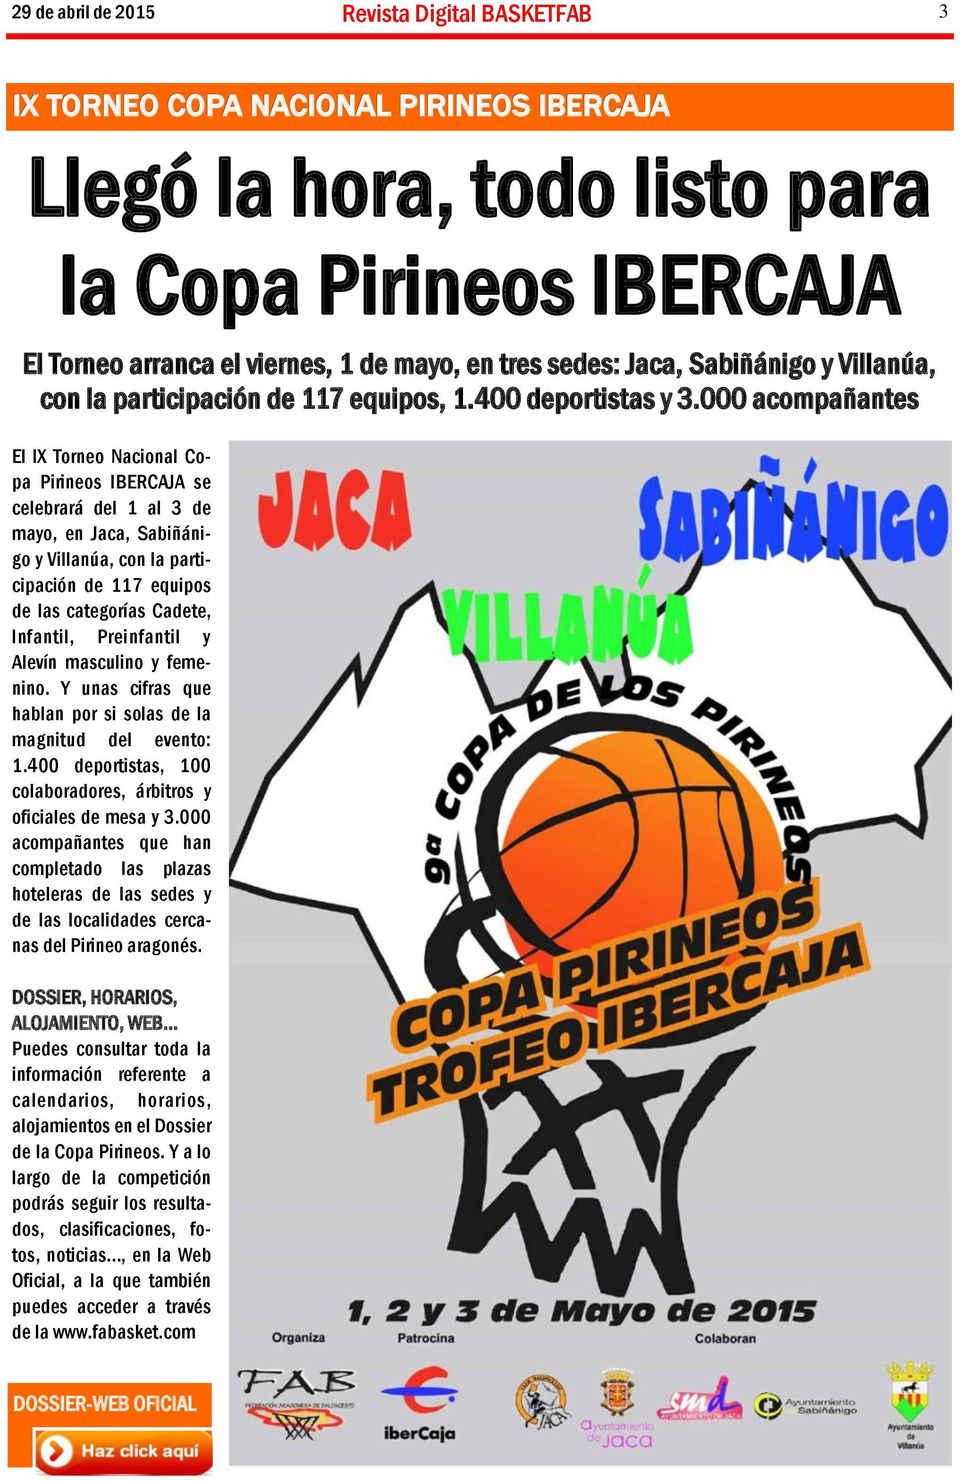 000 acompañantes El IX Torneo Nacional Copa Pirineos IBERCAJA se celebrará del 1 al 3 de mayo, en Jaca, Sabiñánigo y Villanúa, con la participación de 117 equipos de las categorías Cadete, Infantil,